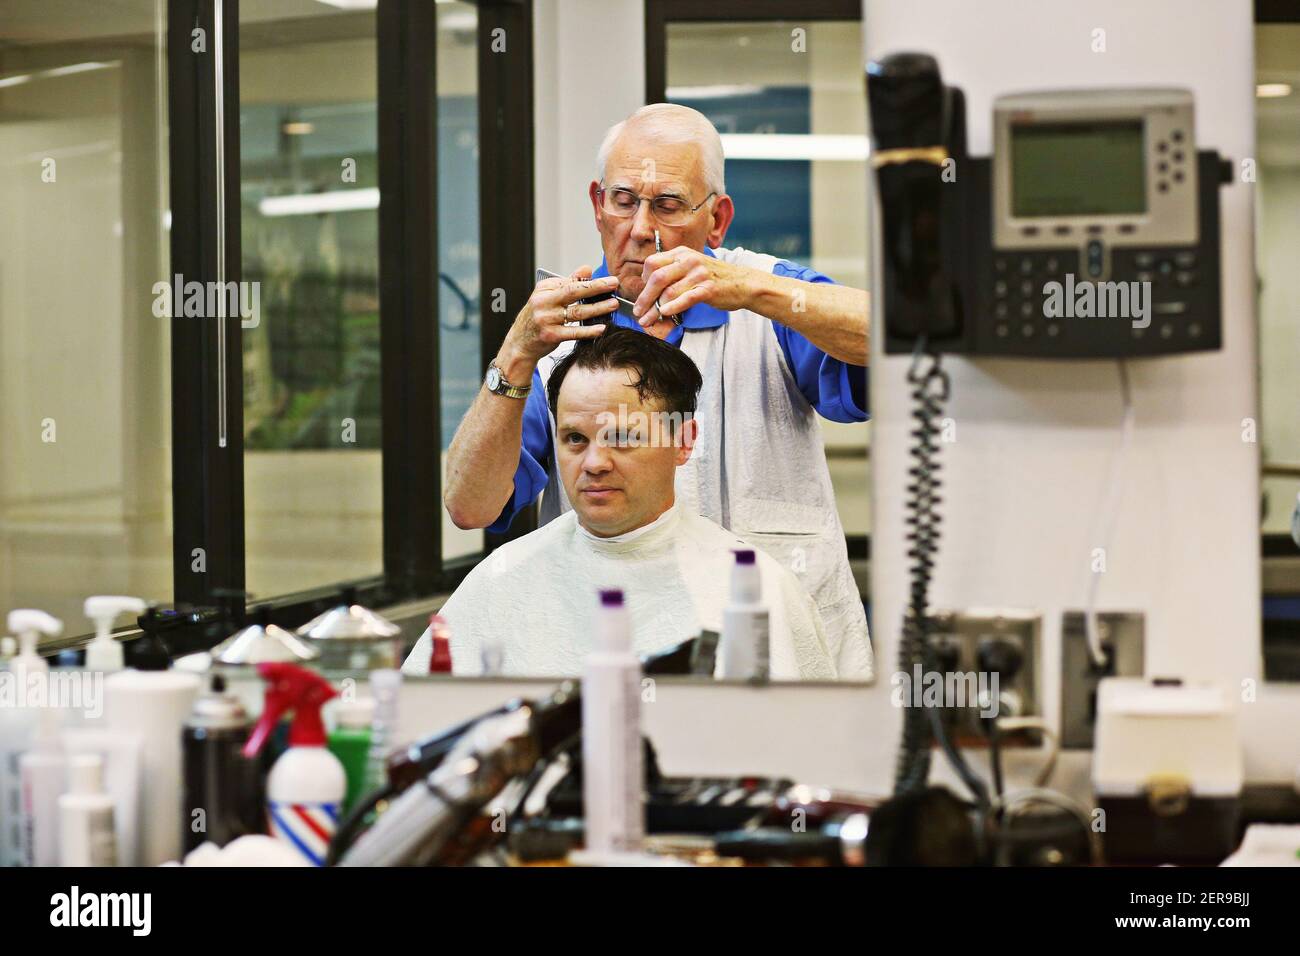 David Fowler, el barber principal en Duke Barbershop en Durham, N.C., corta el pelo del cliente de larga data Adam Connor el 25 de mayo de 2018. Duke Barbershop cerrará a finales de mayo después de más de un siglo en el campus, con Fowler cortando el pelo allí durante 55 años. (Foto de Juli Leonard/Raleigh News & Observer/TNS/Sipa USA) Foto de stock